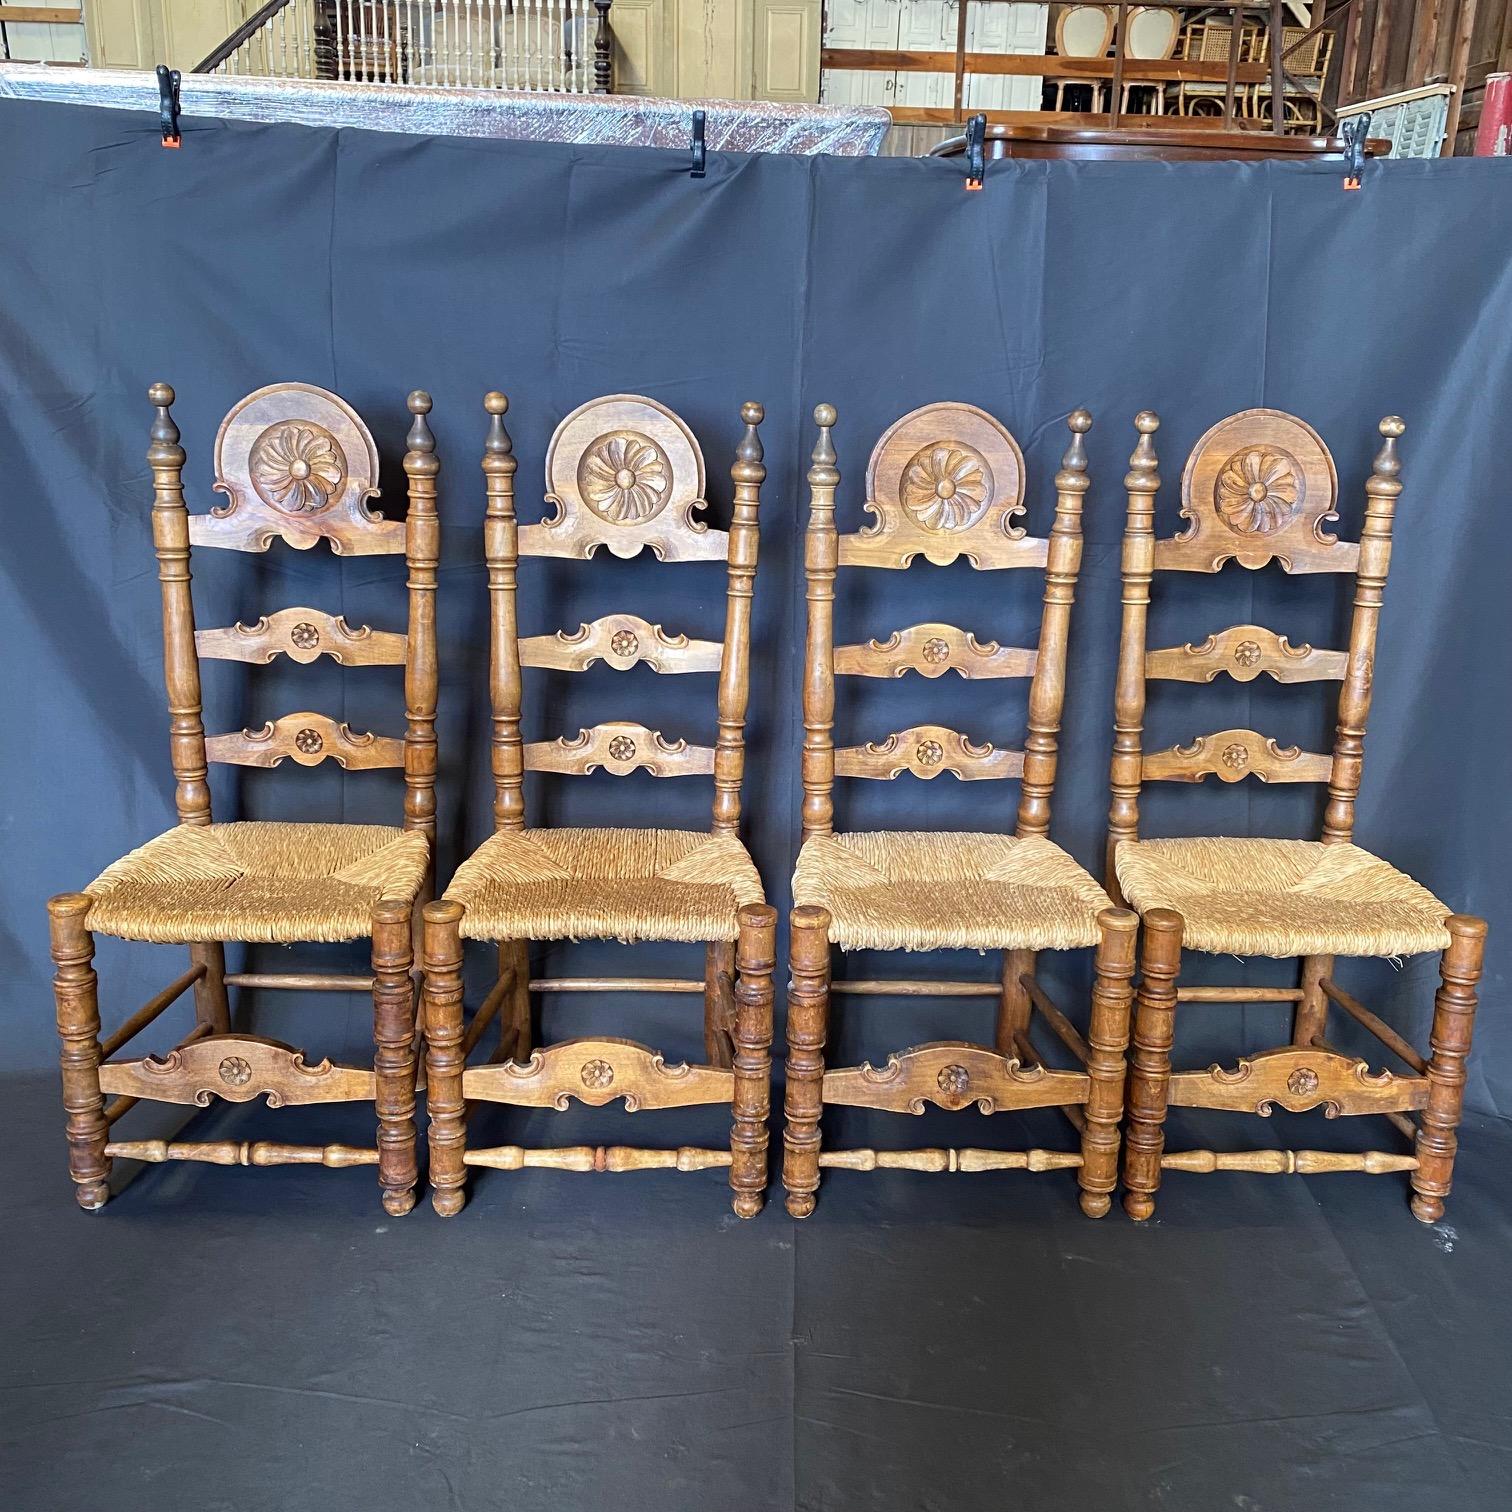 Très belles chaises de salle à manger ou chaises d'appoint espagnoles traditionnelles sculptées et fantaisistes, avec des poteaux tournés et des médaillons floraux sur chacun des supports de dossier avec une belle fleur sculptée sur l'appui-tête